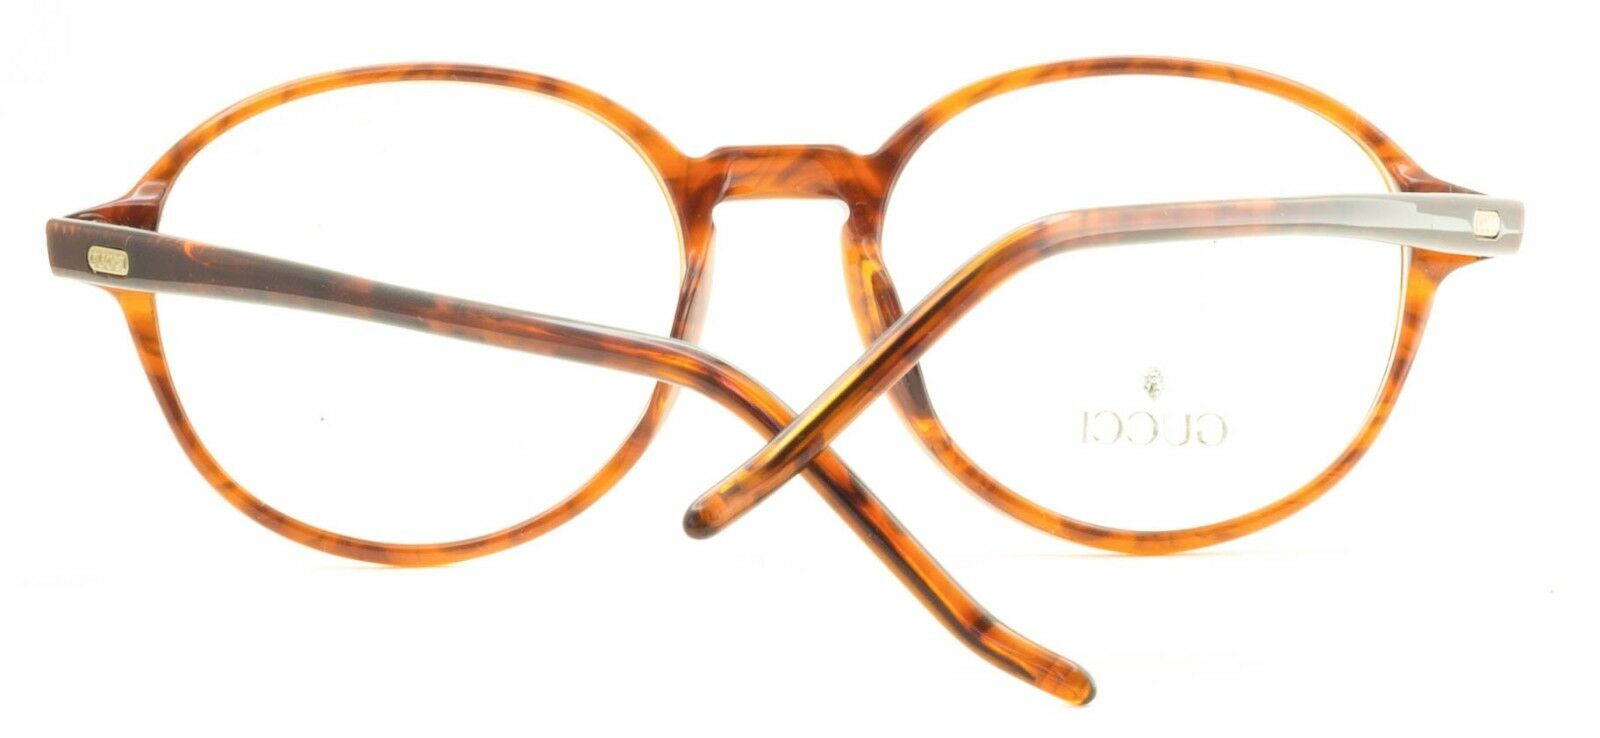 GUCCI GG 1144 B27 Eyewear FRAMES NEW Glasses RX Optical Eyeglasses ITALY - BNIB